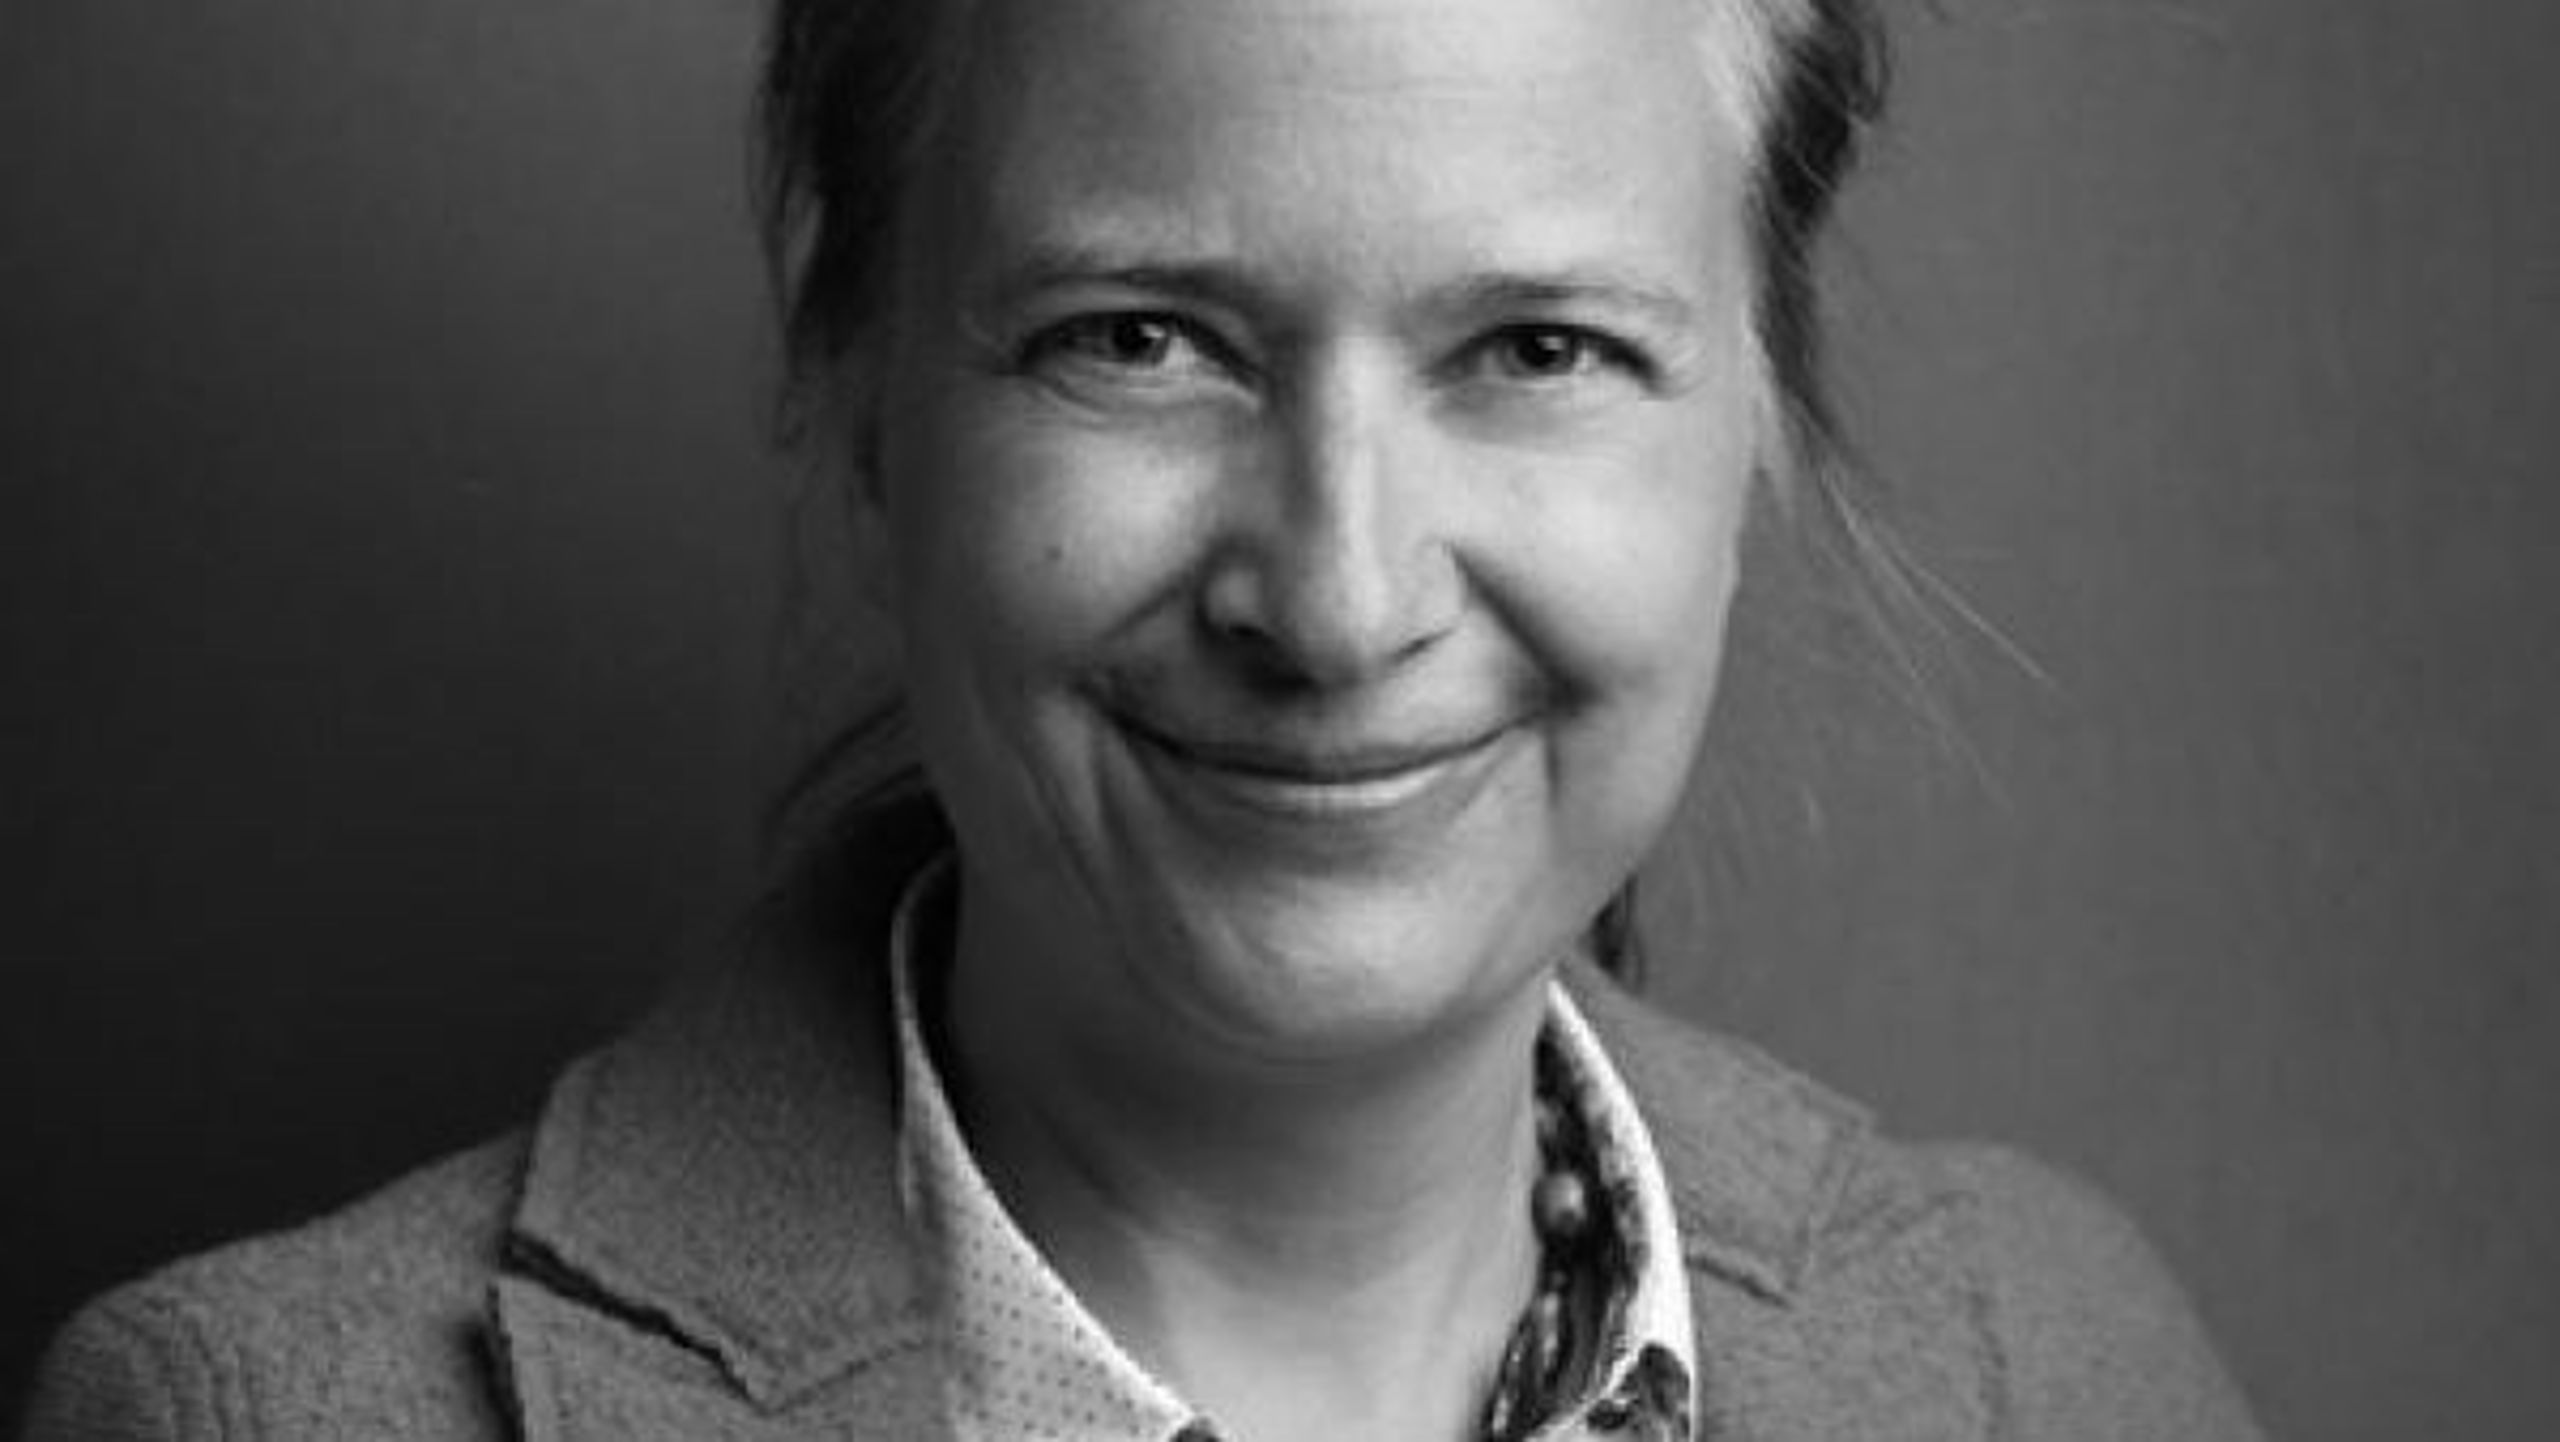 Danmarks Tech-ambassade bør&nbsp; have adresse et sted,
hvor vi kan være den samlende aktør for vores politiske allierede, skriver&nbsp;Eva Grambye.